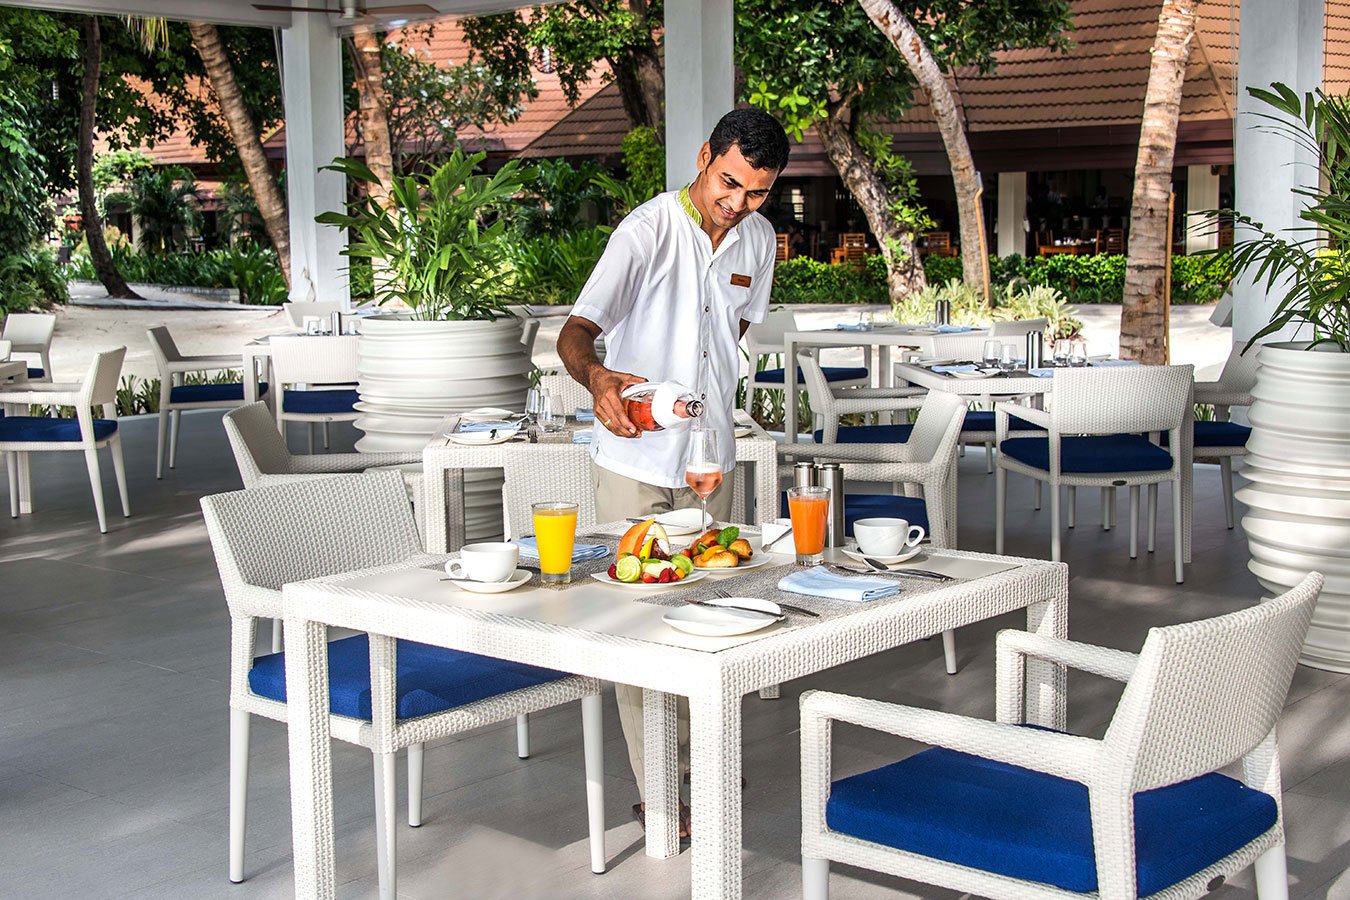 Signature Restaurant |Thila | Kurumba Maldives Resort